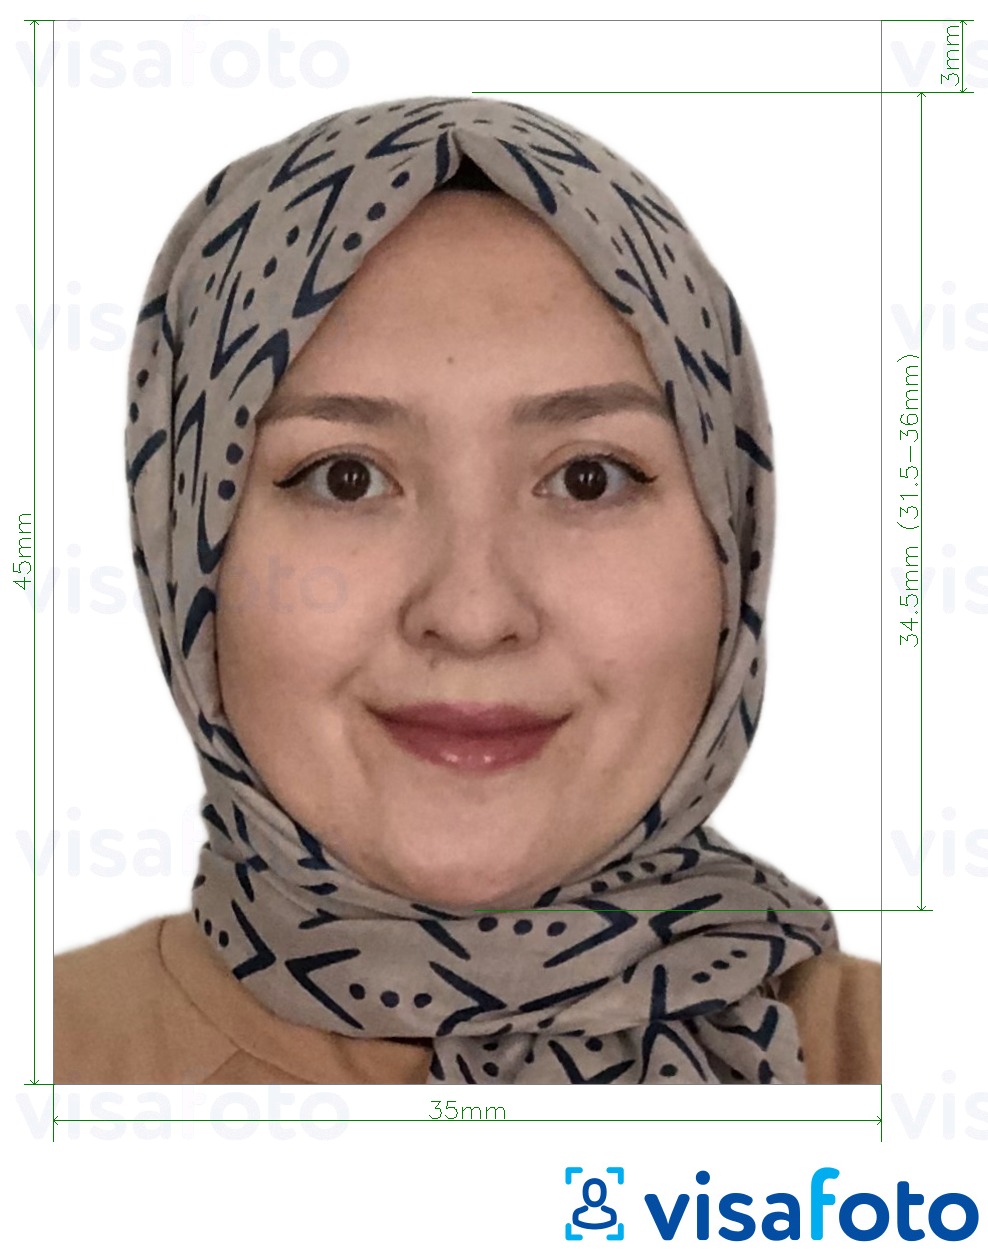 Príklad fotografie pre Afganistan vízum 35x45 mm (3,5 x 4,5 cm) s presnou špecifikáciou veľkosti